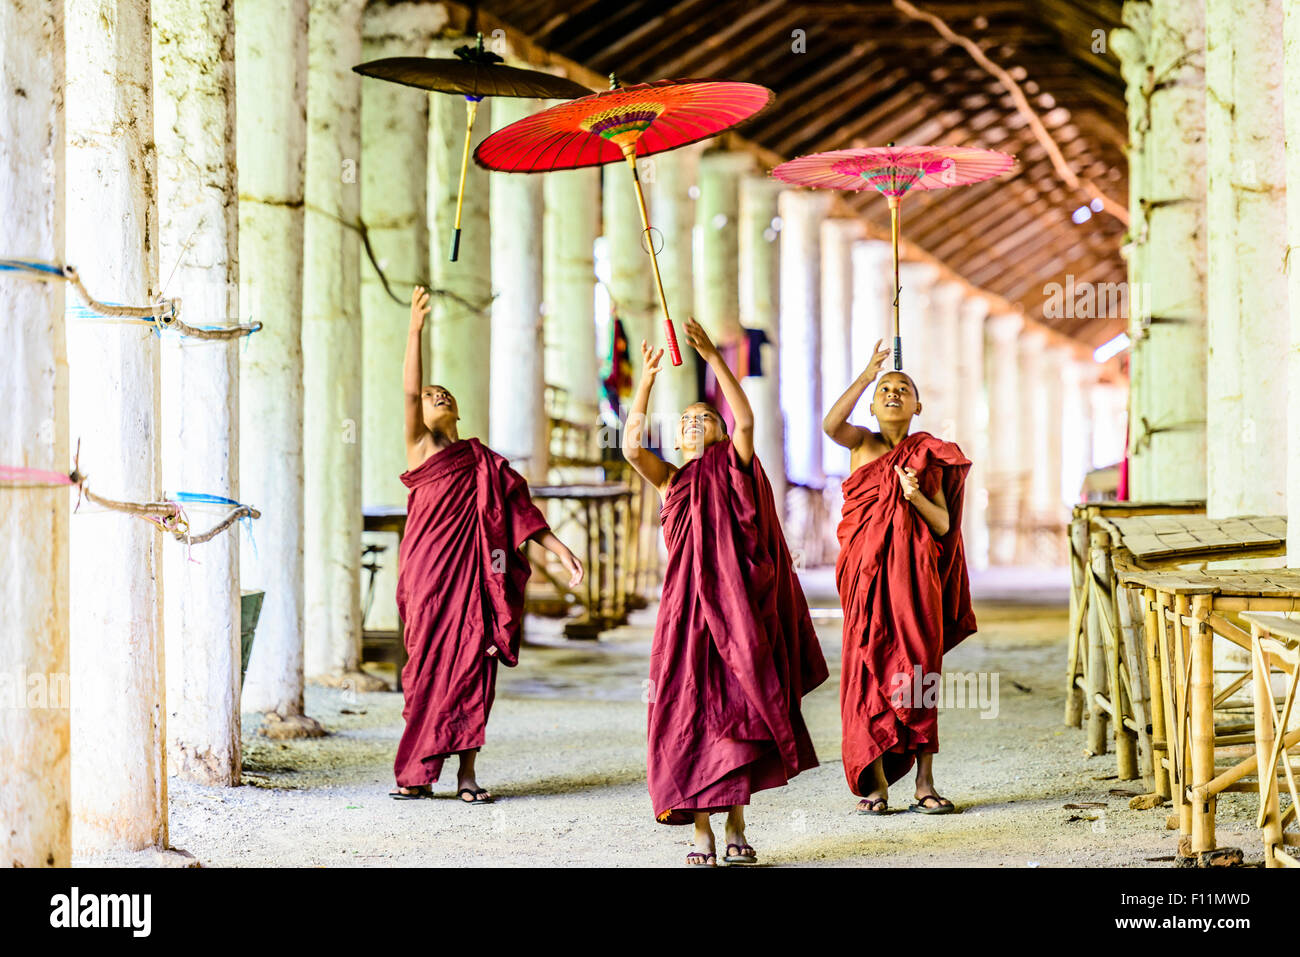 Les moines d'Asie en formation jouant avec des parasols à couloir Banque D'Images